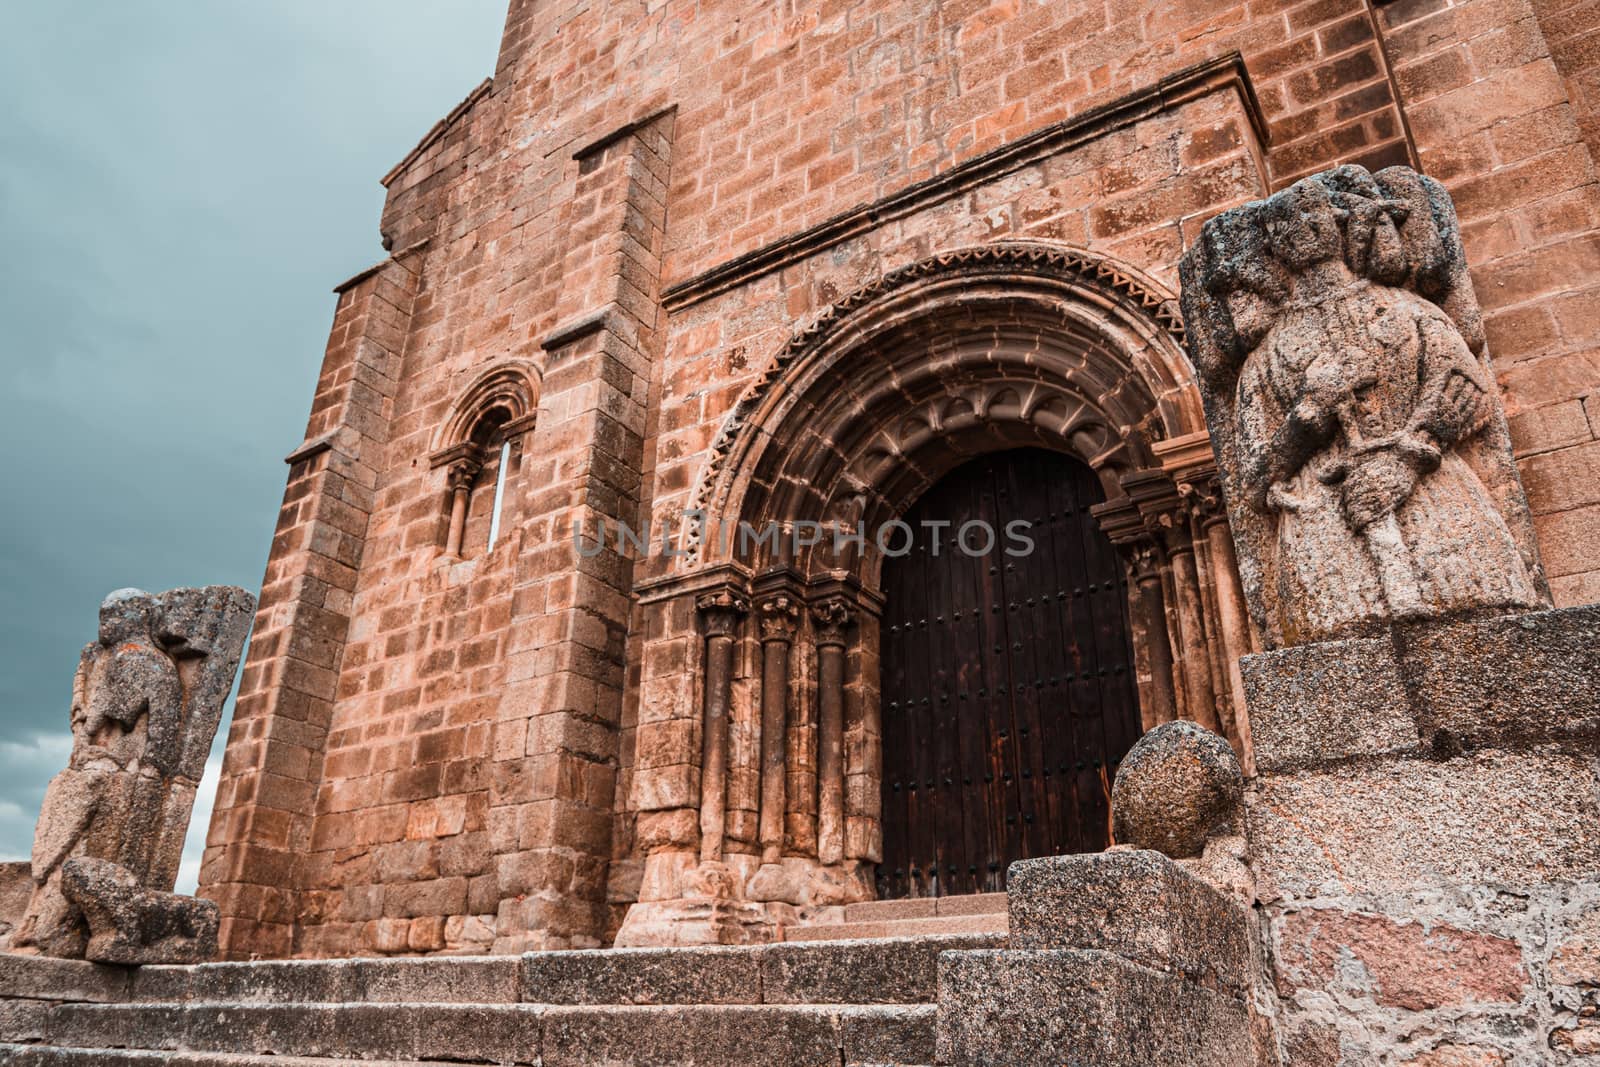 Romanesque church of San Pedro de Almocovar in Alcantara, Spain by tanaonte